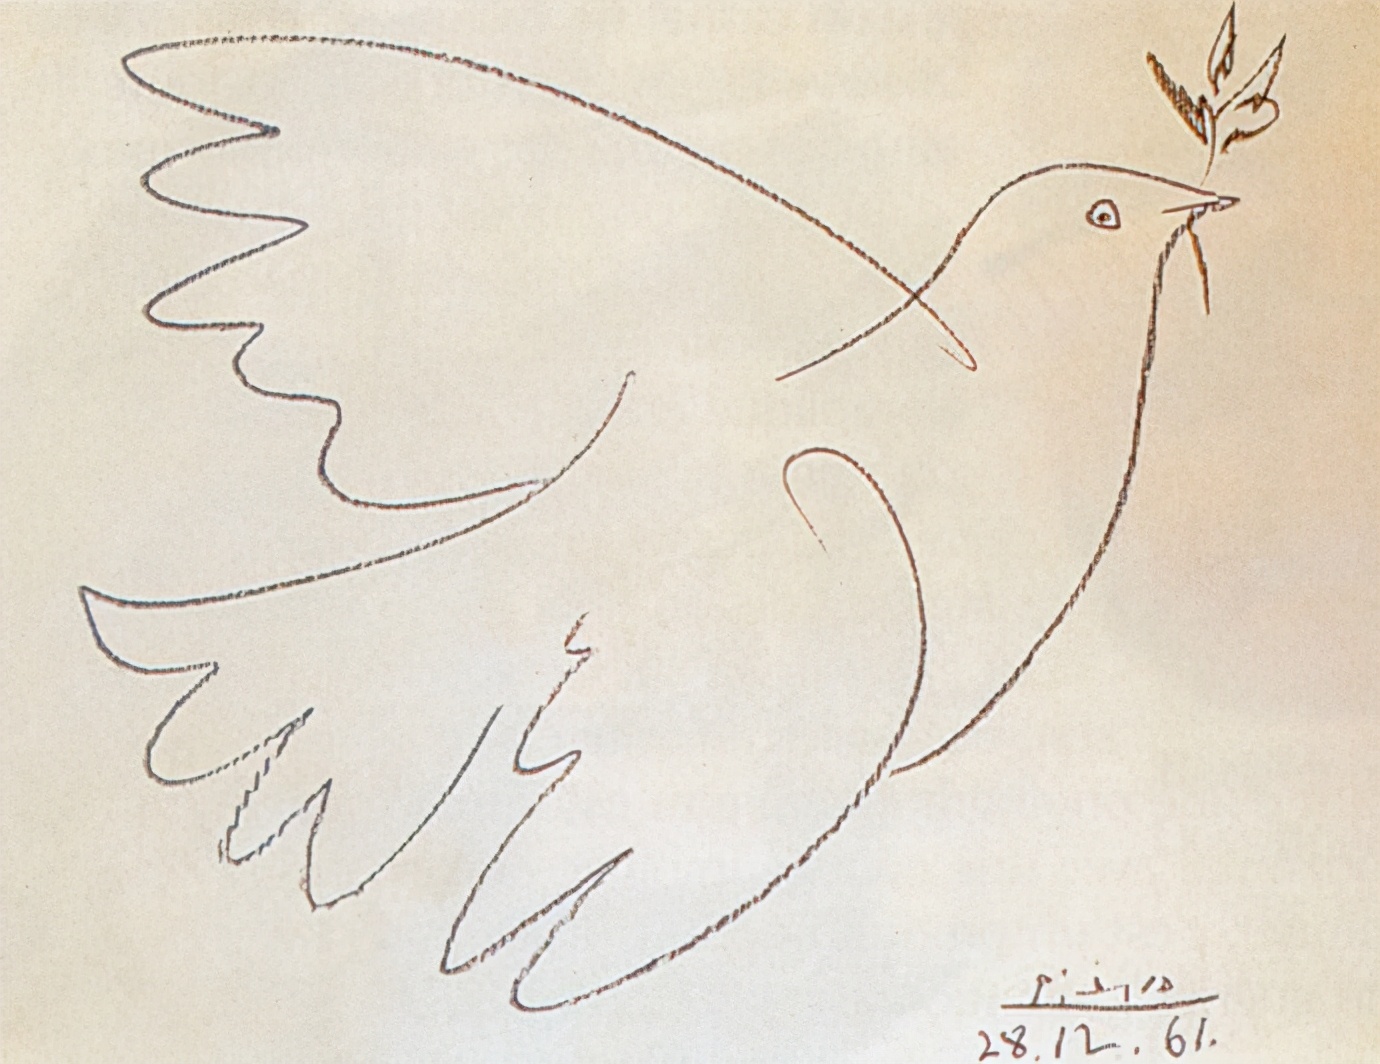 毕加索的和平鸽介绍图片